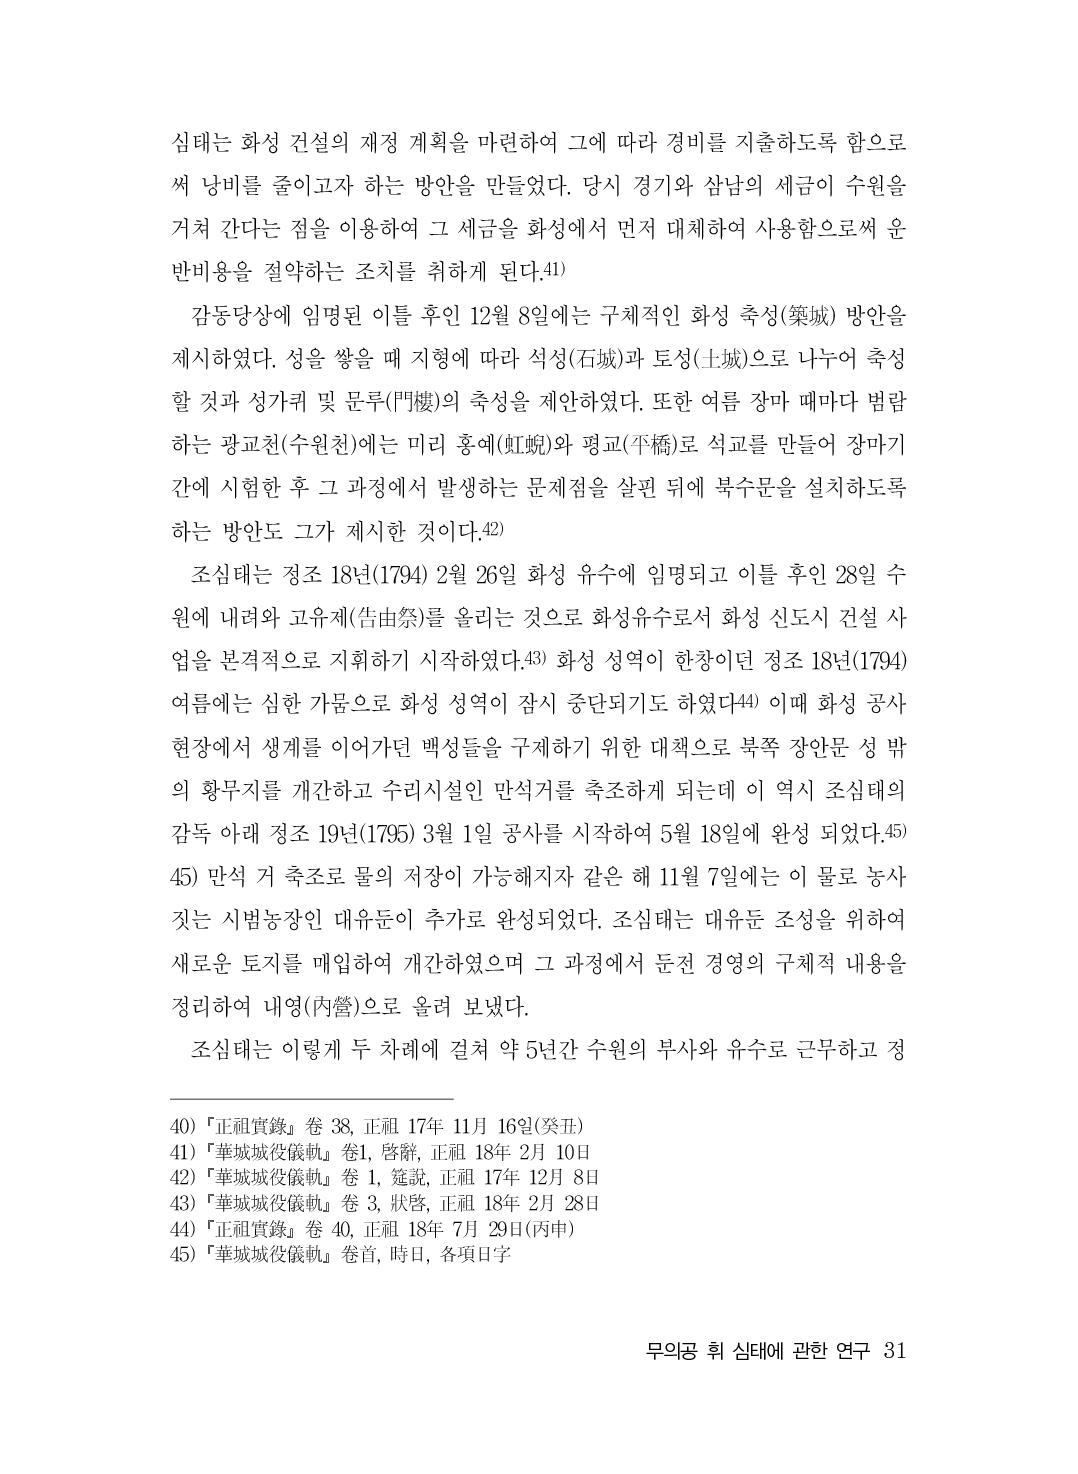 (전체) 송산종보(27호)(최종)_32.jpg